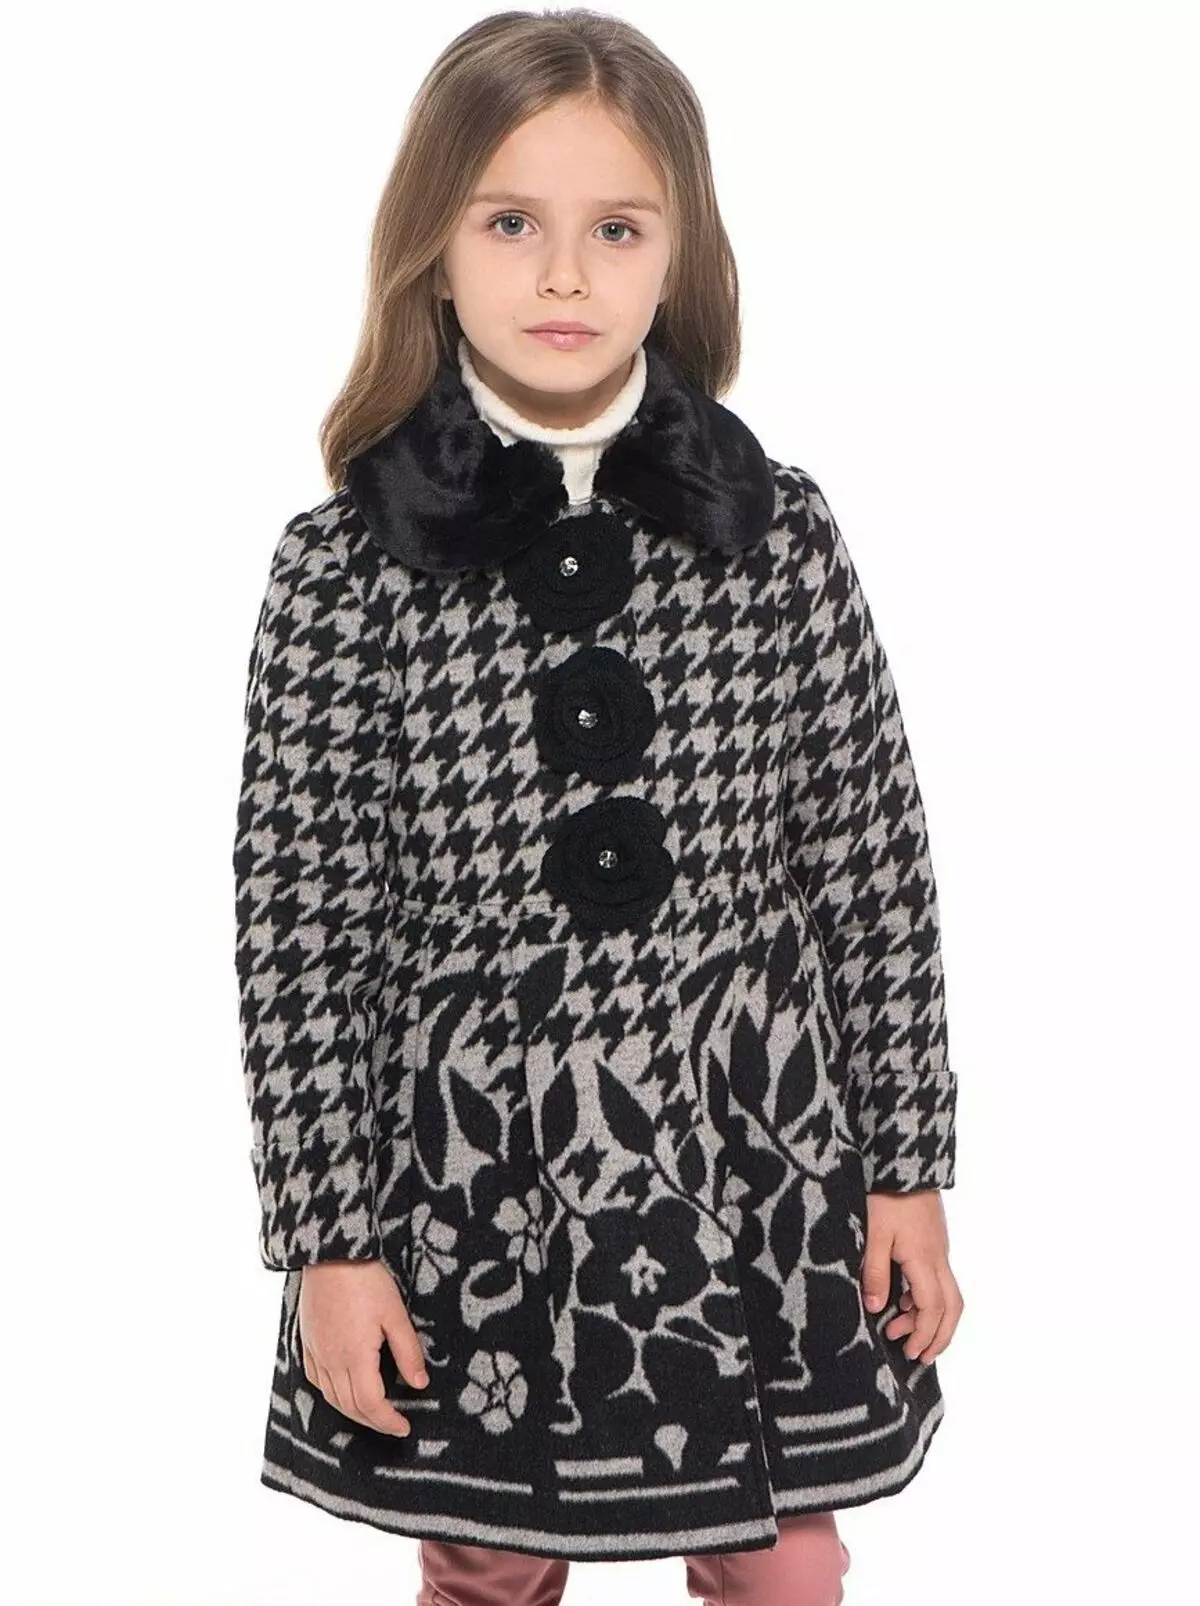 어린이 코트 (102 장의 사진) : 모직, 핀란드어, Zara, Downed, Dolce Gabbana, Shingry 훈련, 레드, 상어 코트, 시장 596_84